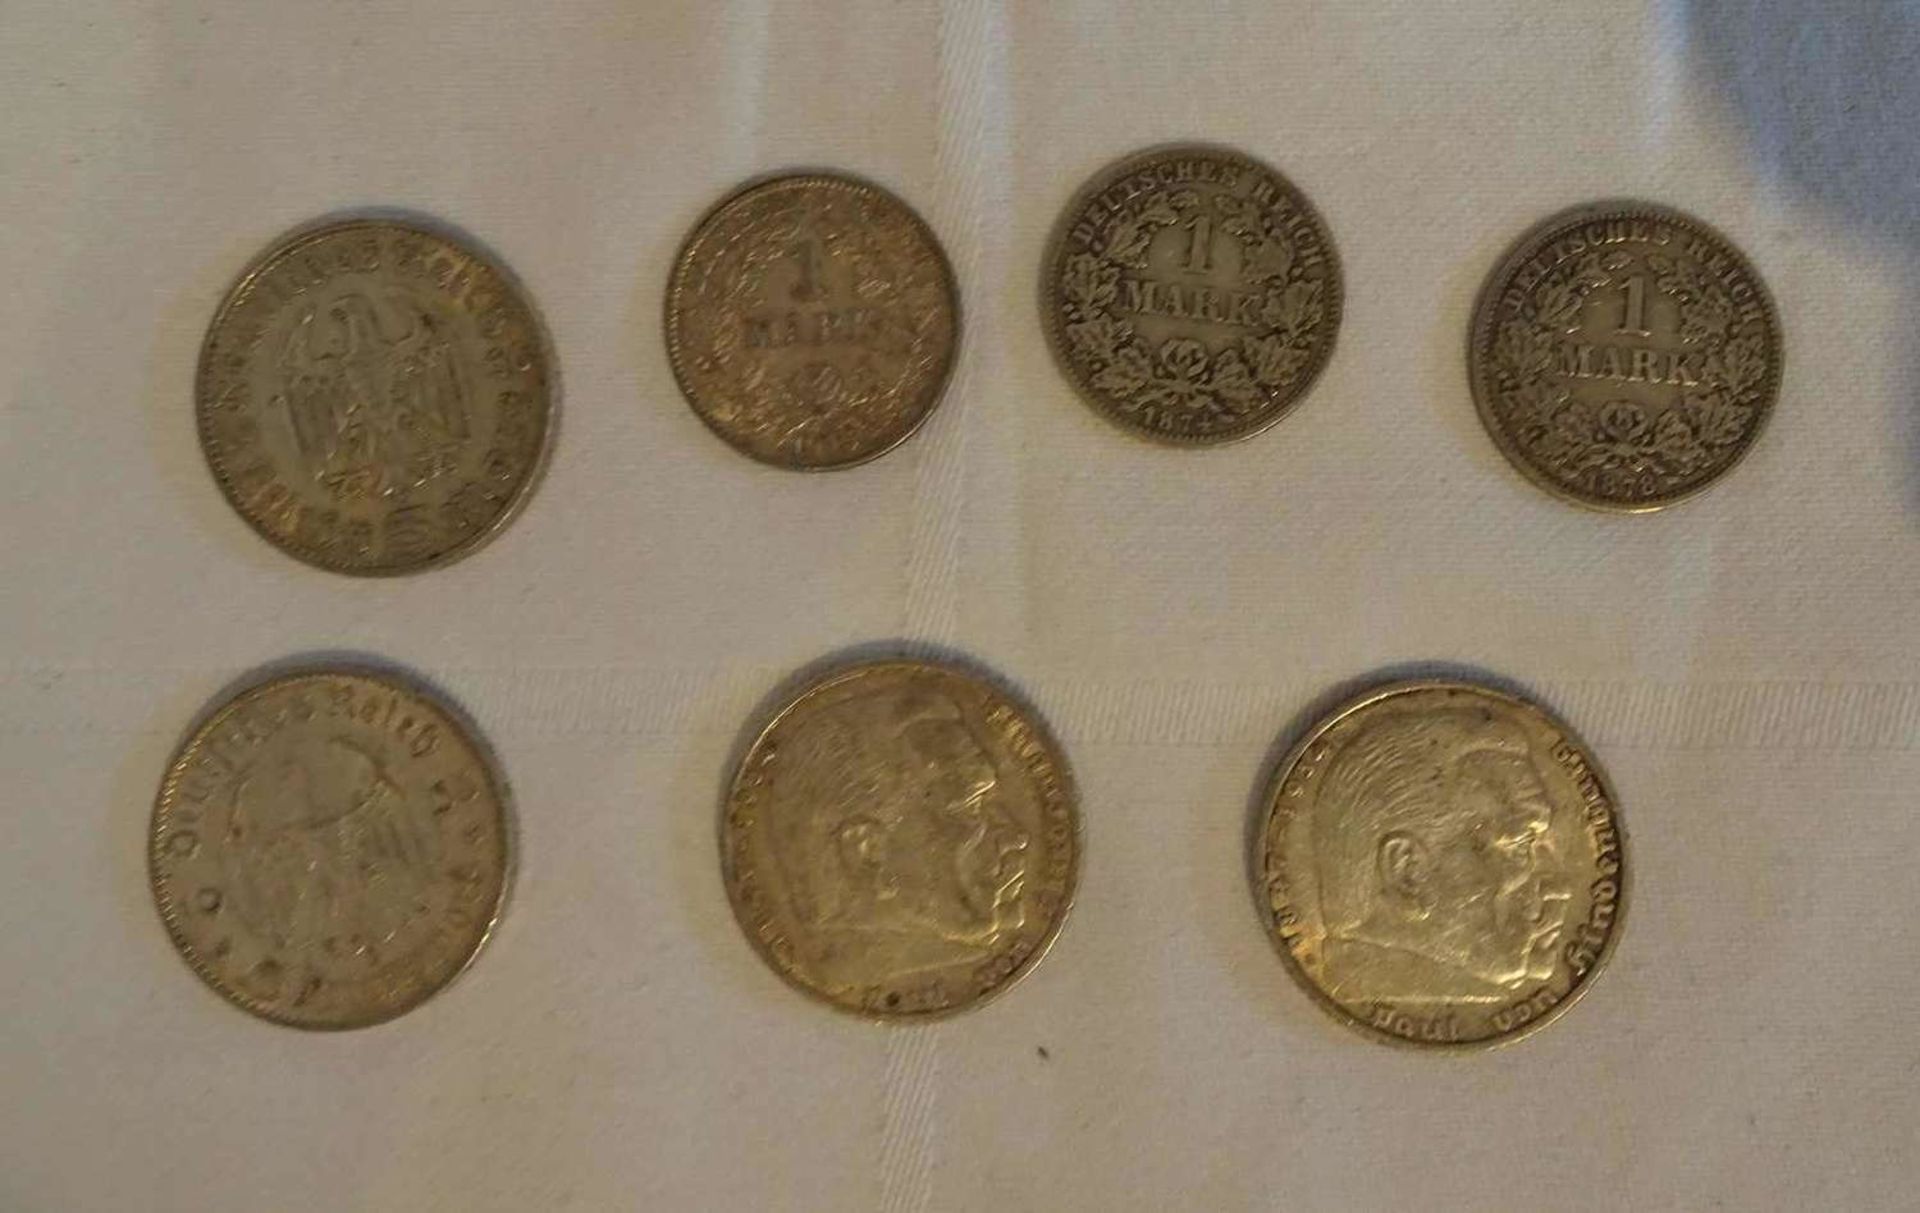 Lot Silbermünzen, bestehend aus 4x 5 Reichsmark (3x Hindenburg, 1x Garnisionskirche), sowie 3x 1